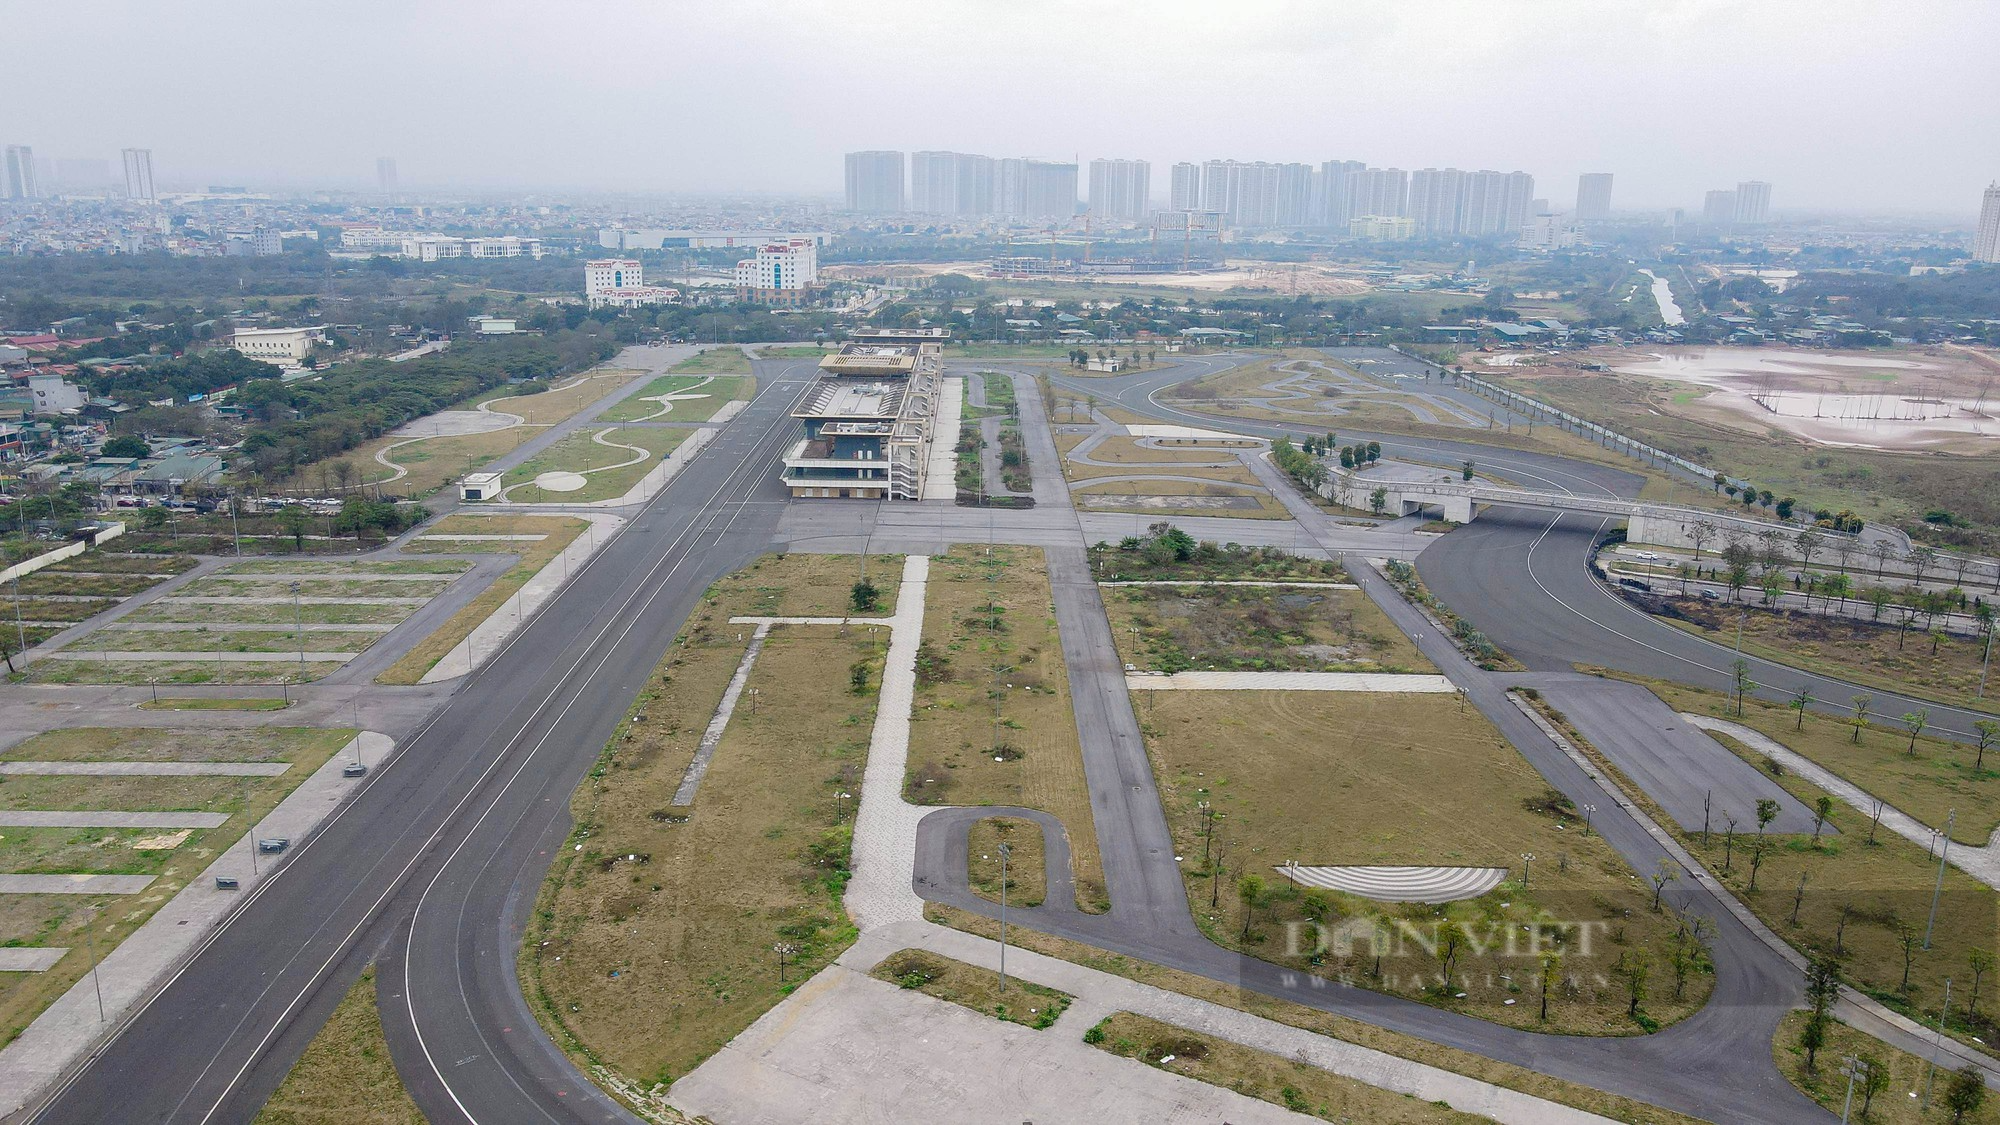 Hiện trạng 300.000 m2 đường đua F1 sau khi Hà Nội chuyển đổi mục đích khai thác, sử dụng - Ảnh 11.